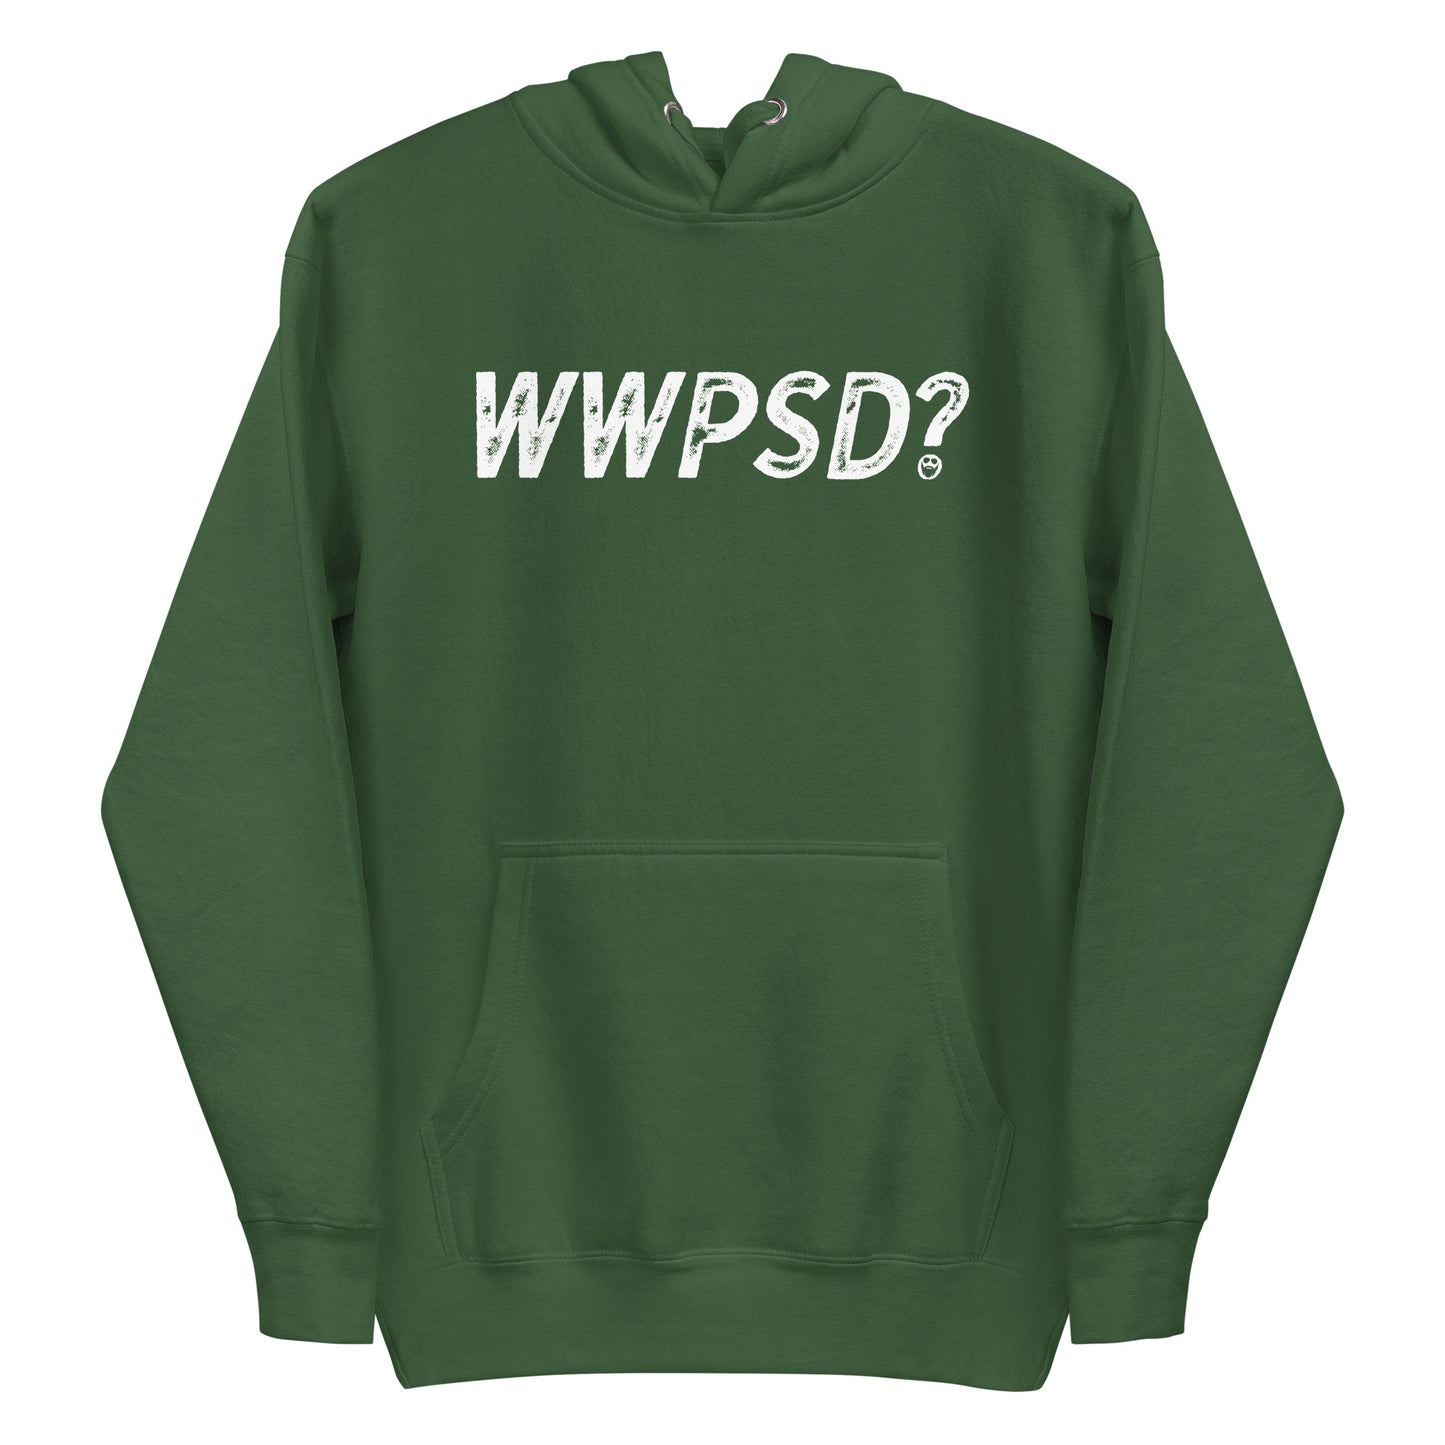 WWPSD? Premium Hoodie